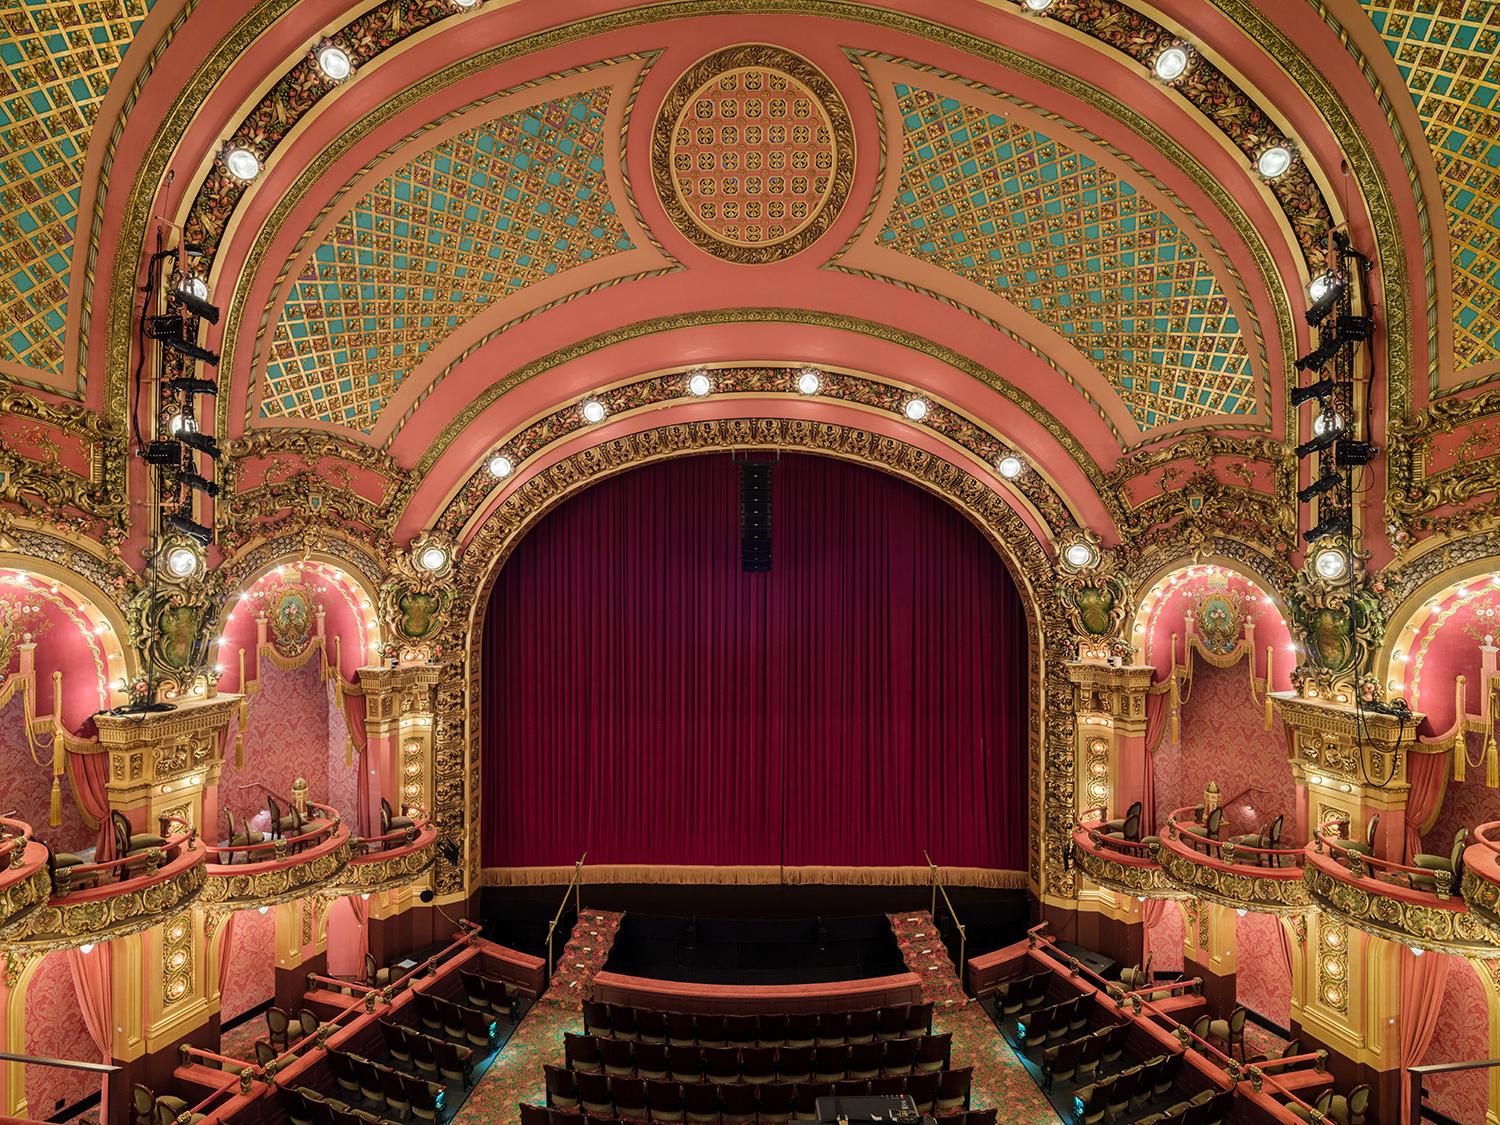 Le Majestic Theatre est une salle d'opéra de style Beaux-Arts, ornée de bijoux, construite en 1903 par l'architecte John Galen Howard, puis un théâtre de vaudeville.

Série : L'architecture des rêves dorés
Impression Canson Platine aux pigments